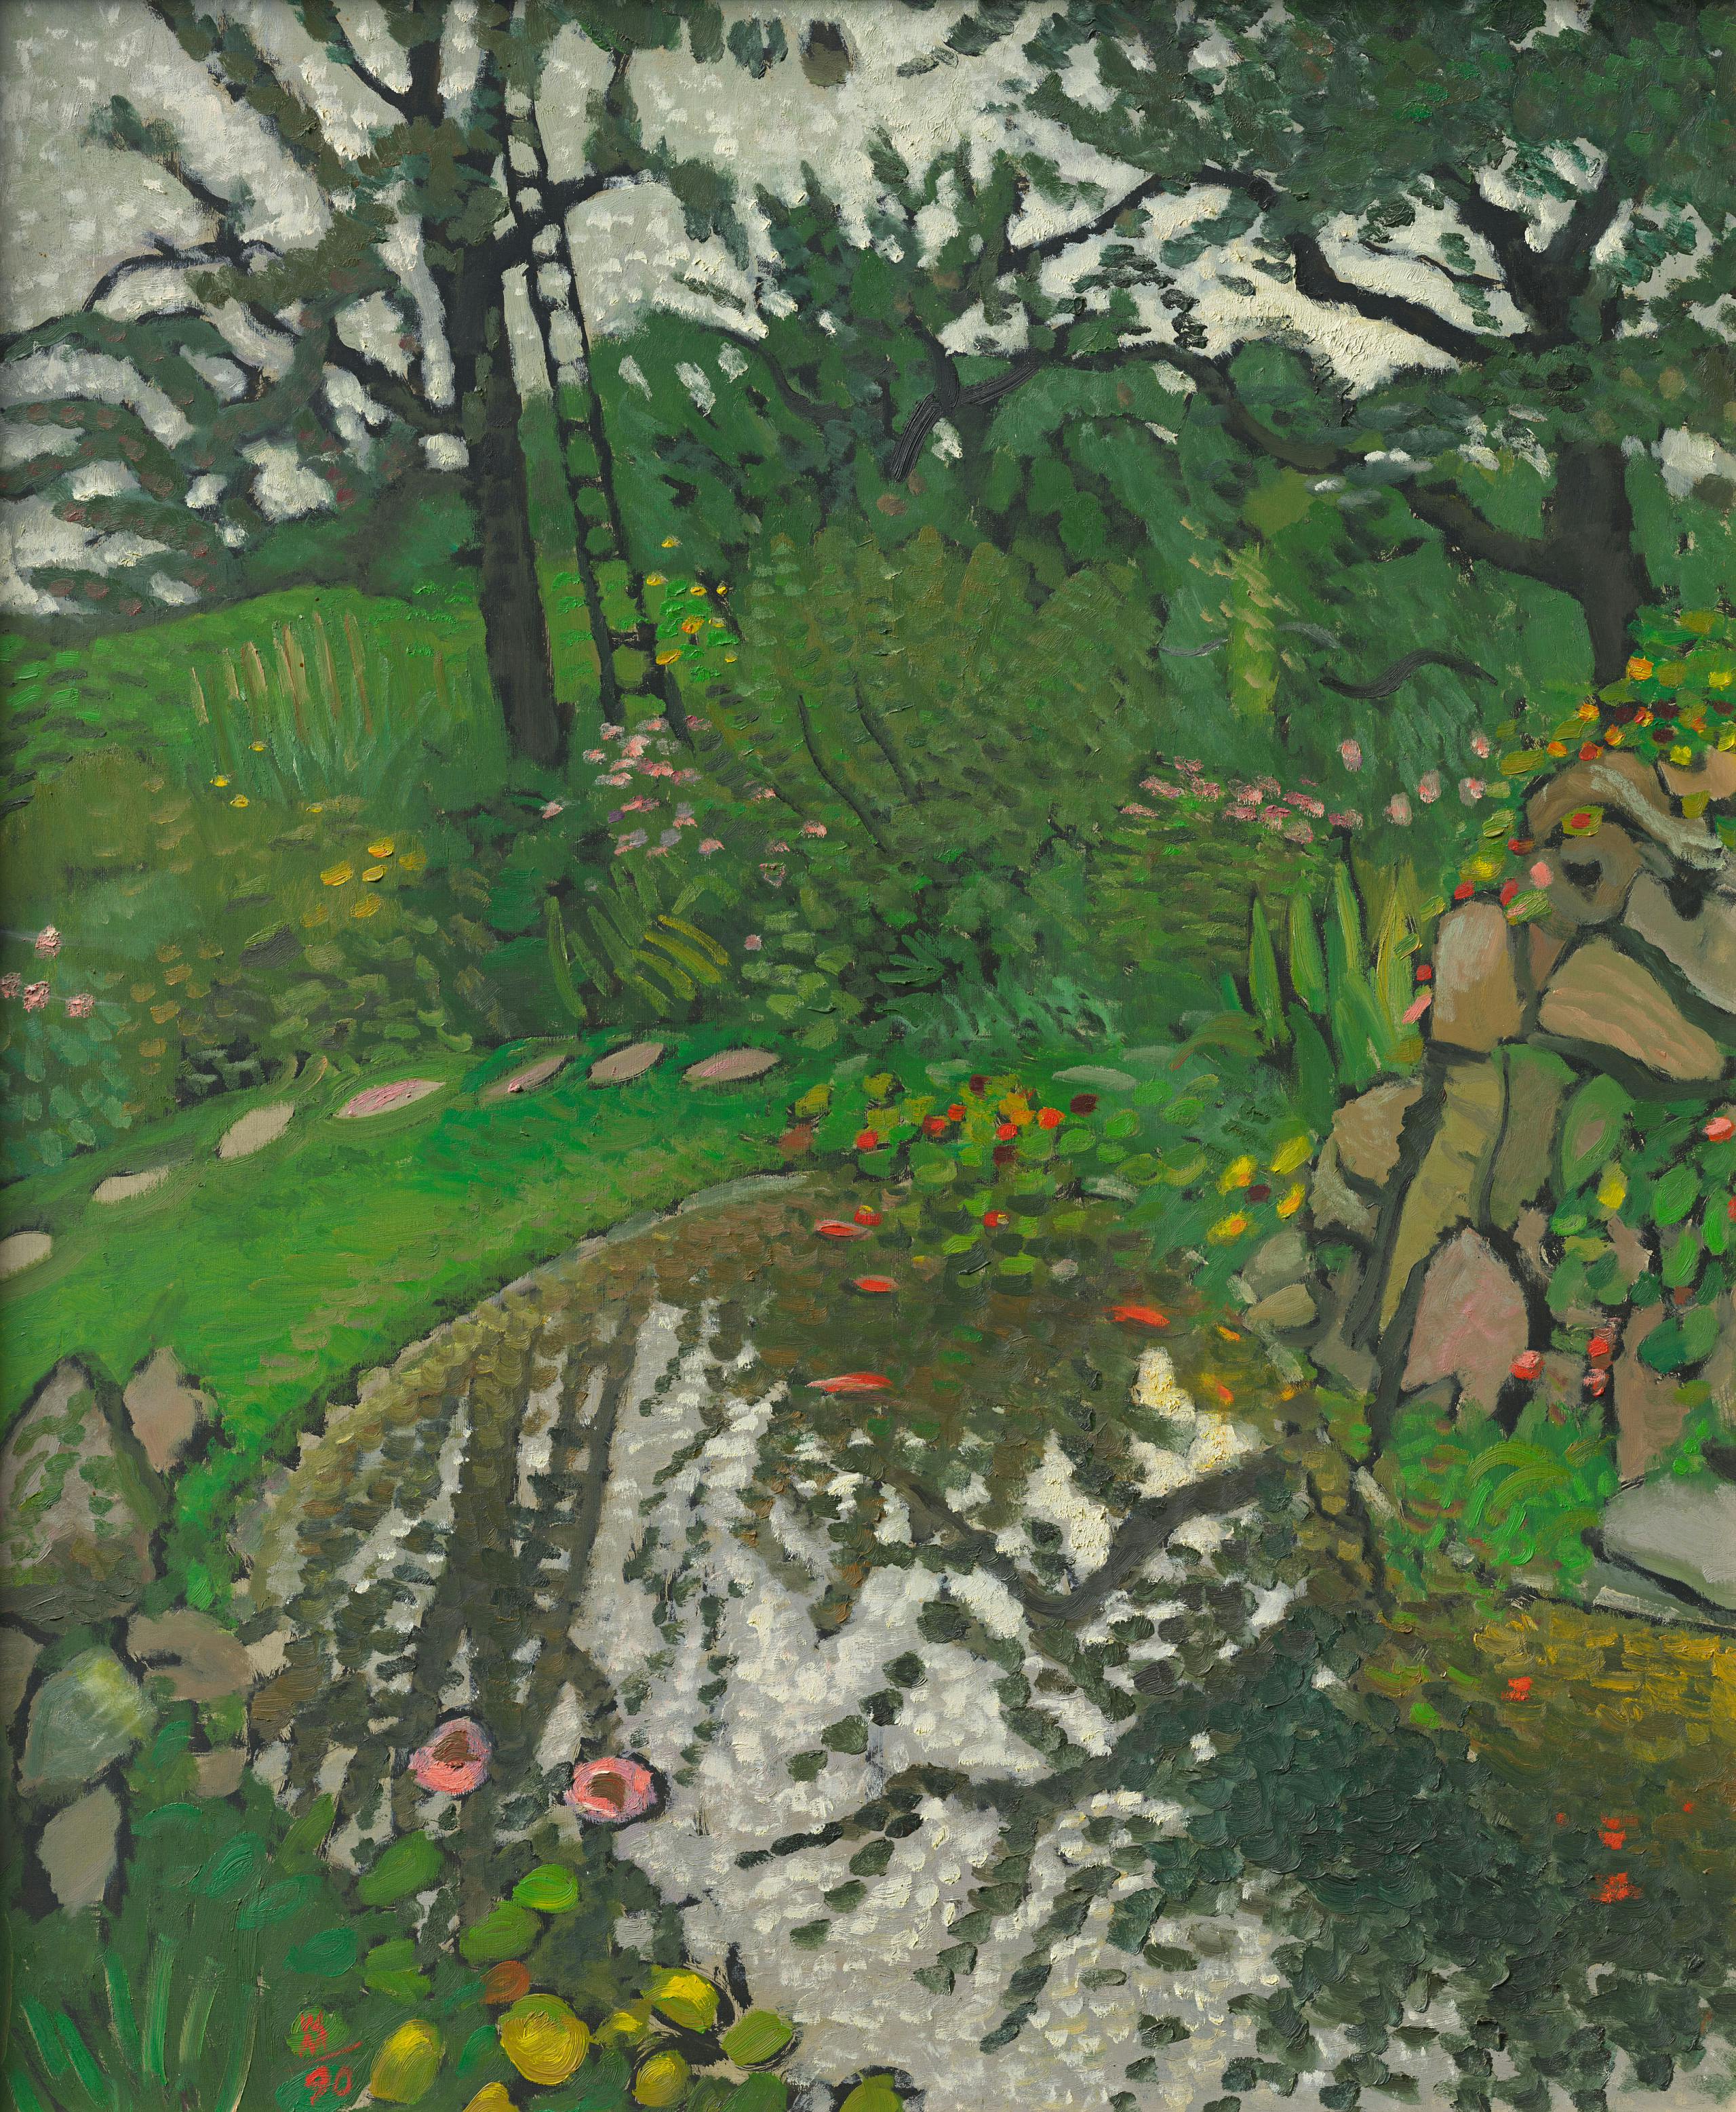 Malerei: Ein Garten in voller Blüte, mit einem Teich, in dem sich die Bäume spiegeln. An einem Baum lehnt eine Leiter.